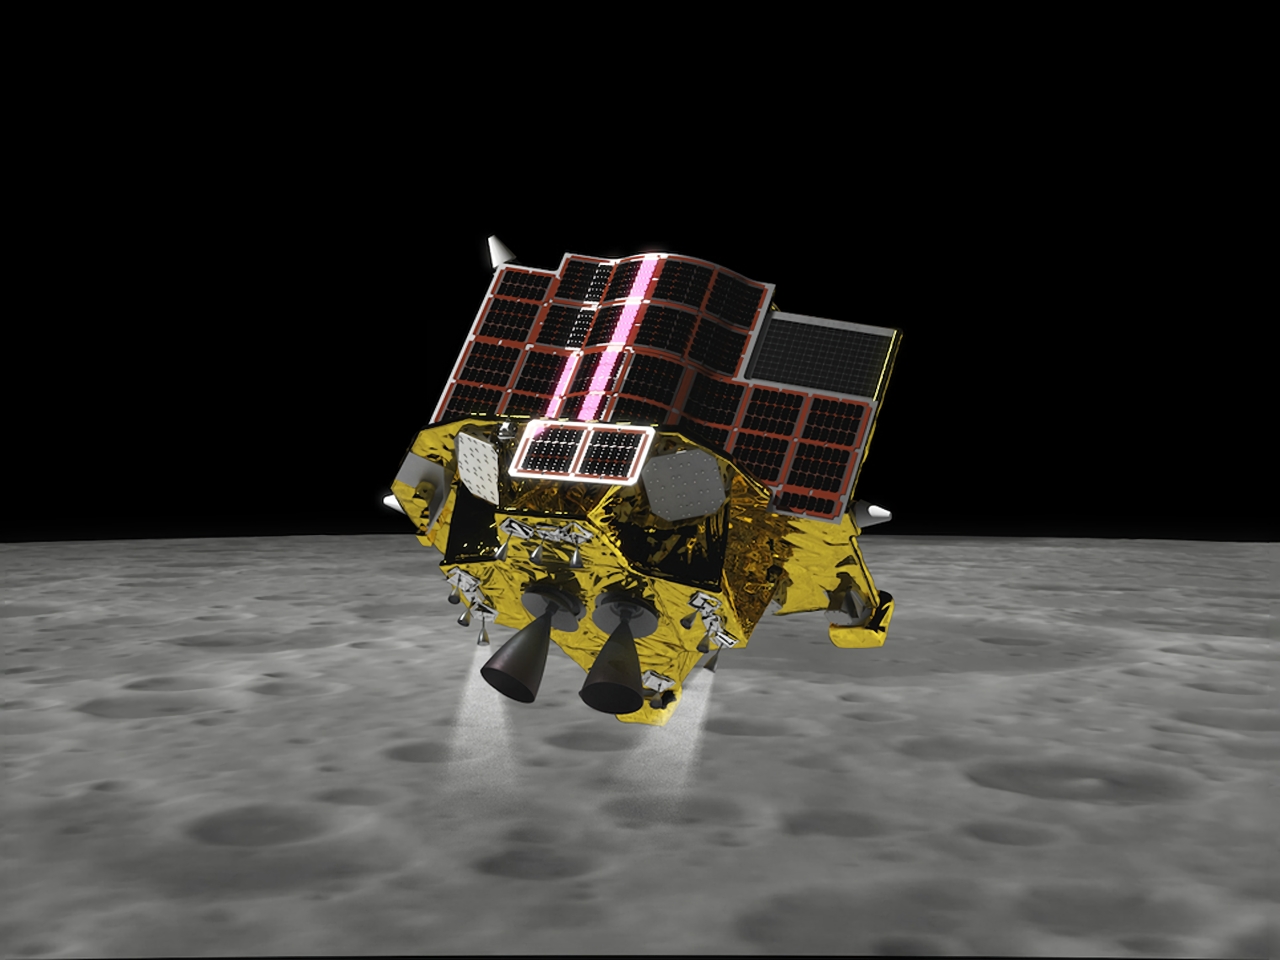 月着陸を目指す「SLIM」、クリティカル運用期間を終了--月へ向かう準備を開始